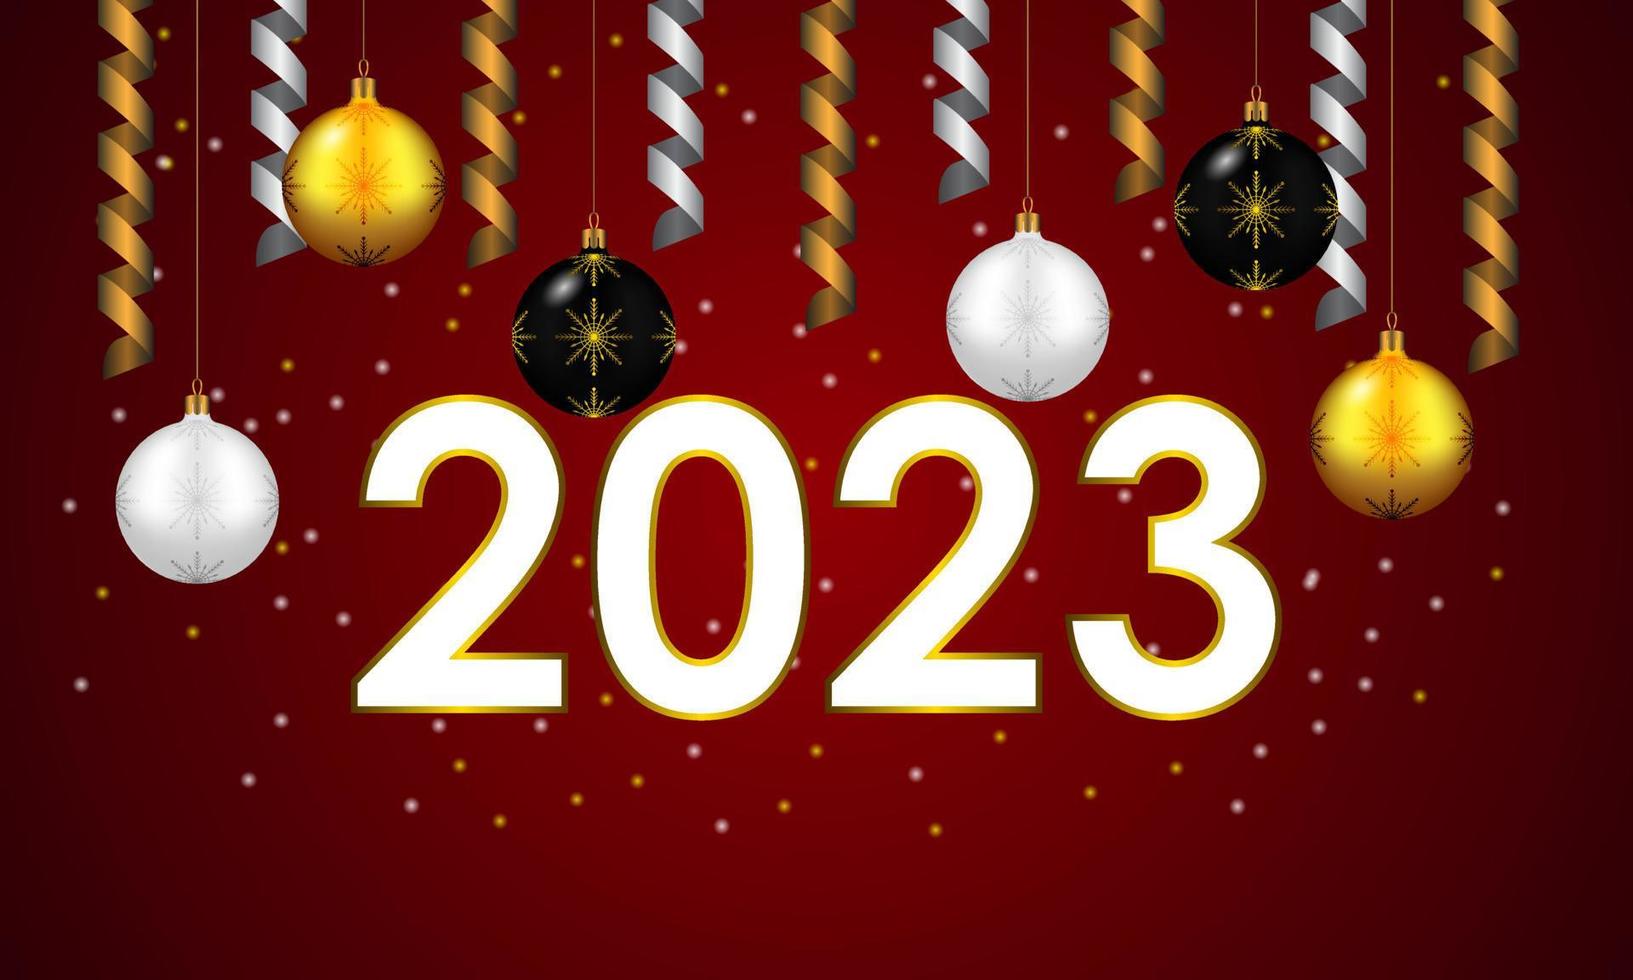 felice anno nuovo 2023. design festivo con decorazioni natalizie, palline e streamer vettore